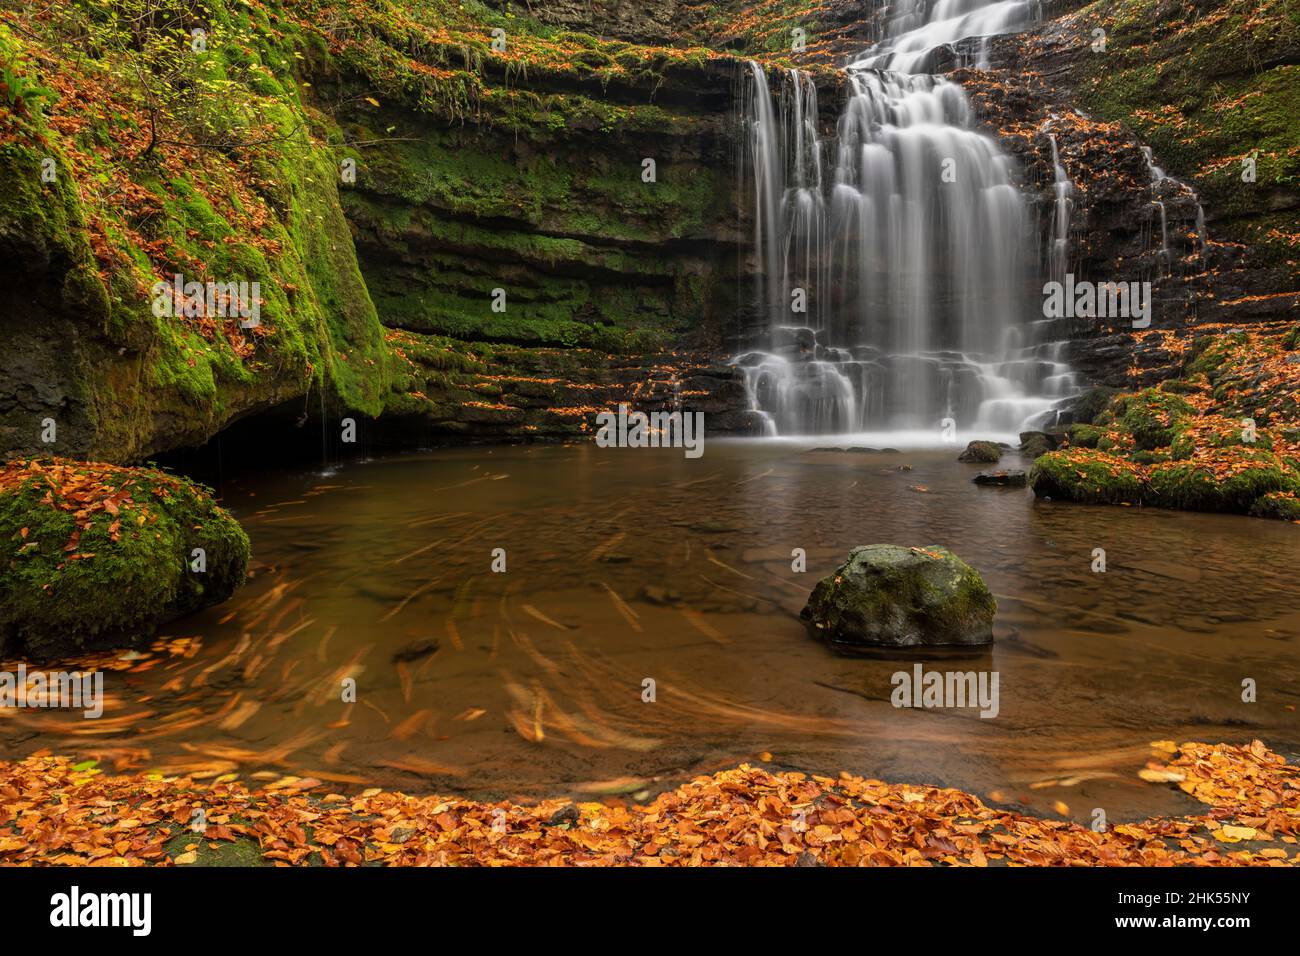 Scaleber Force Wasserfall im Yorkshire Dales Nationalpark, North Yorkshire, England, Vereinigtes Königreich, Europa Stockfoto